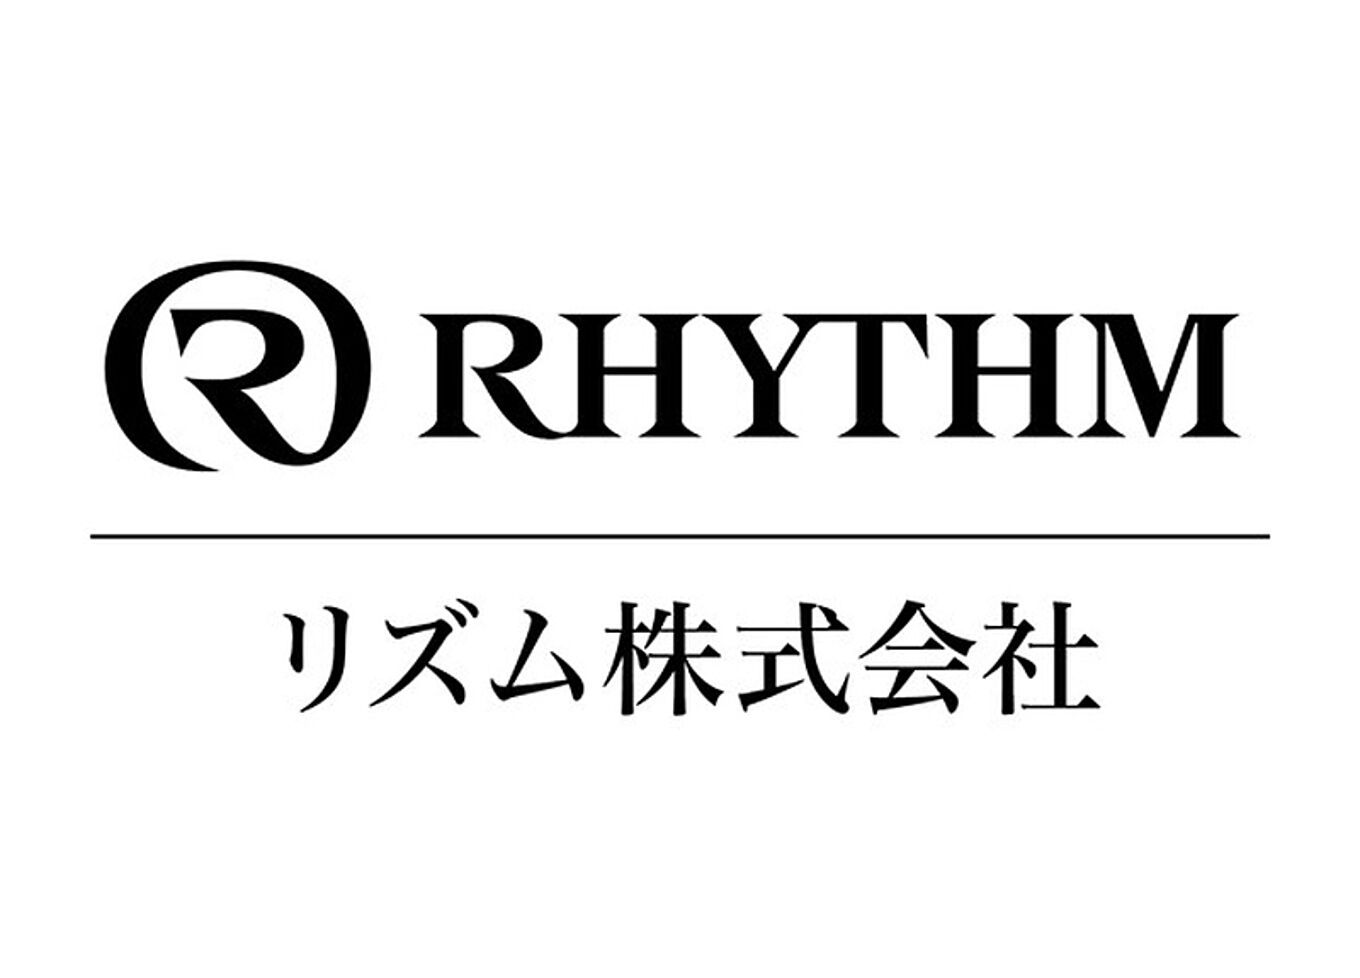 https://cdn.roomclip.jp/v1/w/1360/roomclip-mag-gd/companies/1008_image/s756/rhythm_logo0.jpg